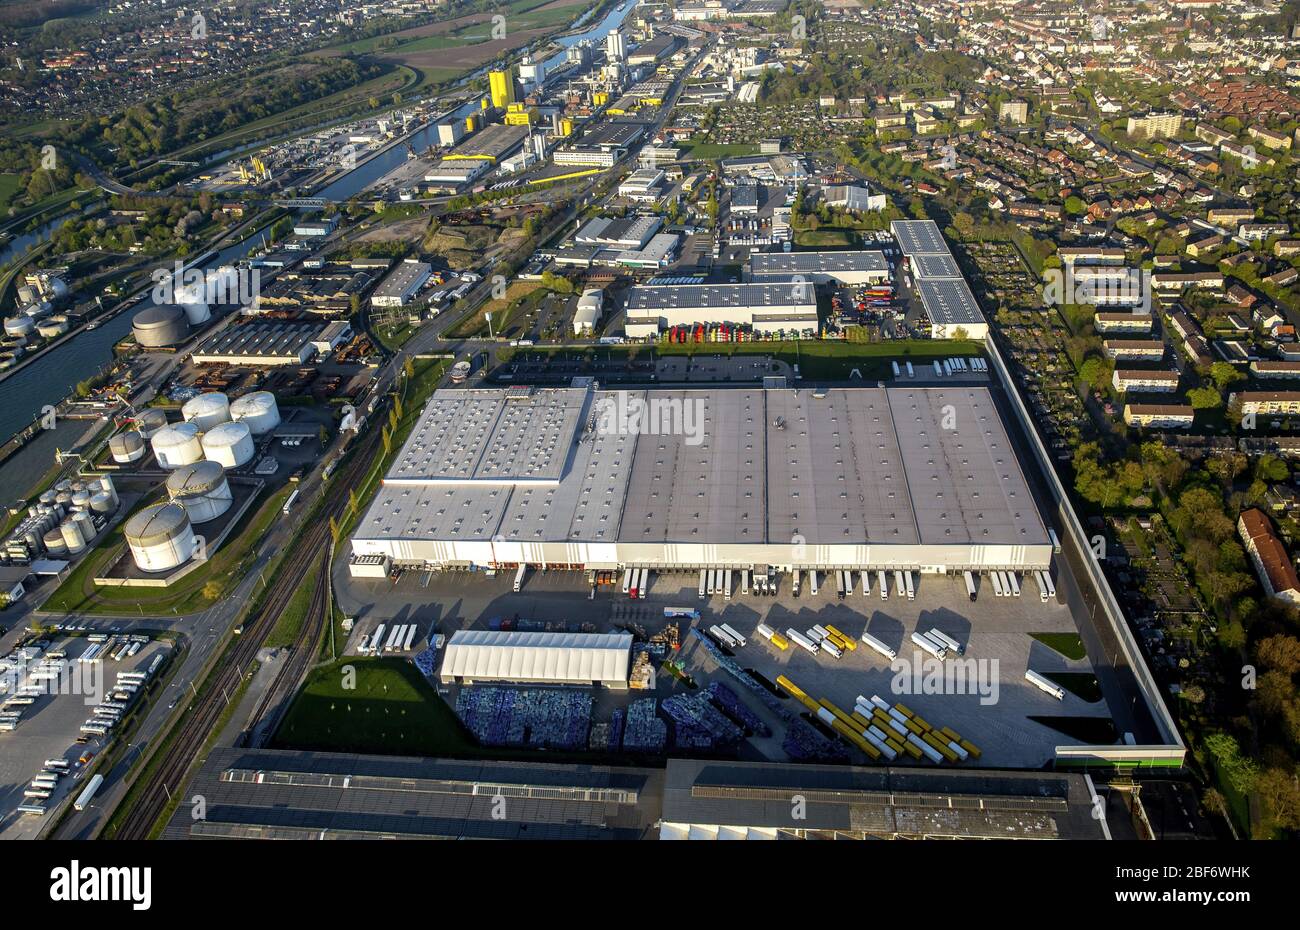 , complexe de bâtiments et locaux du centre logistique de MGL Metro Group à Hamm, 21.04.2016, vue aérienne, Allemagne, Rhénanie-du-Nord-Westphalie, Ruhr Area, Hamm Banque D'Images